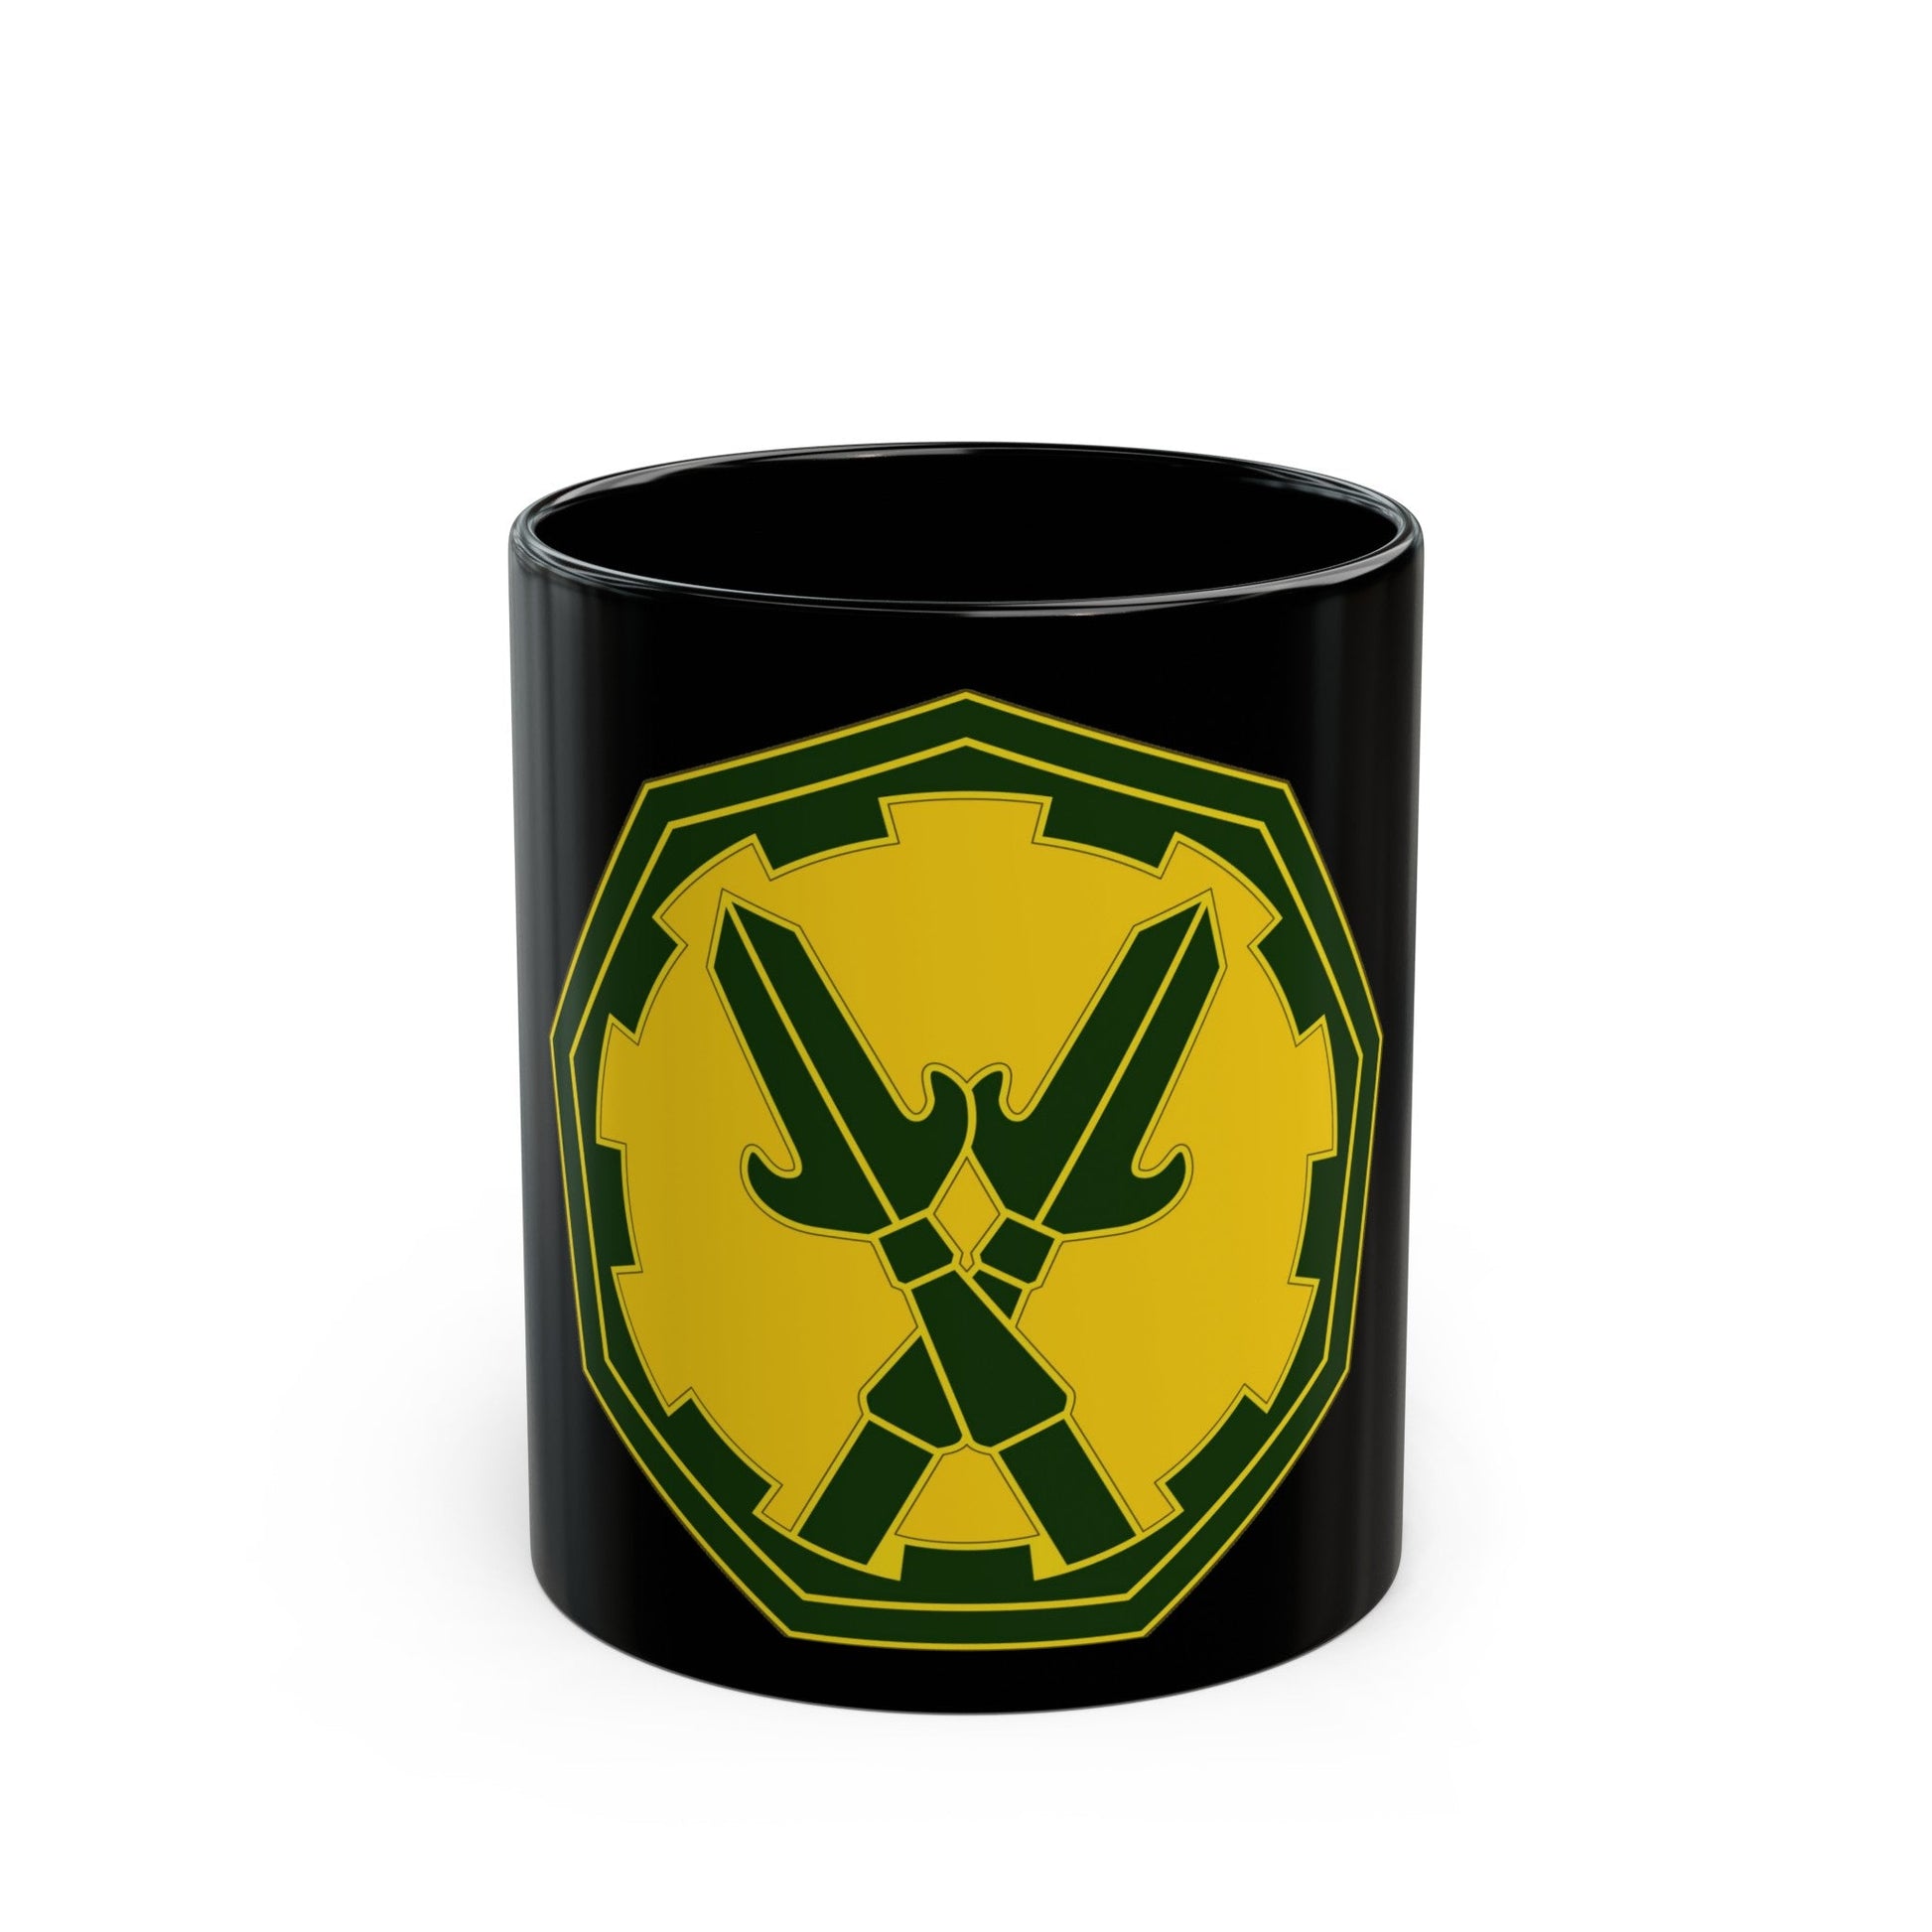 290 Military Police Brigade 3 (U.S. Army) Black Coffee Mug-11oz-The Sticker Space